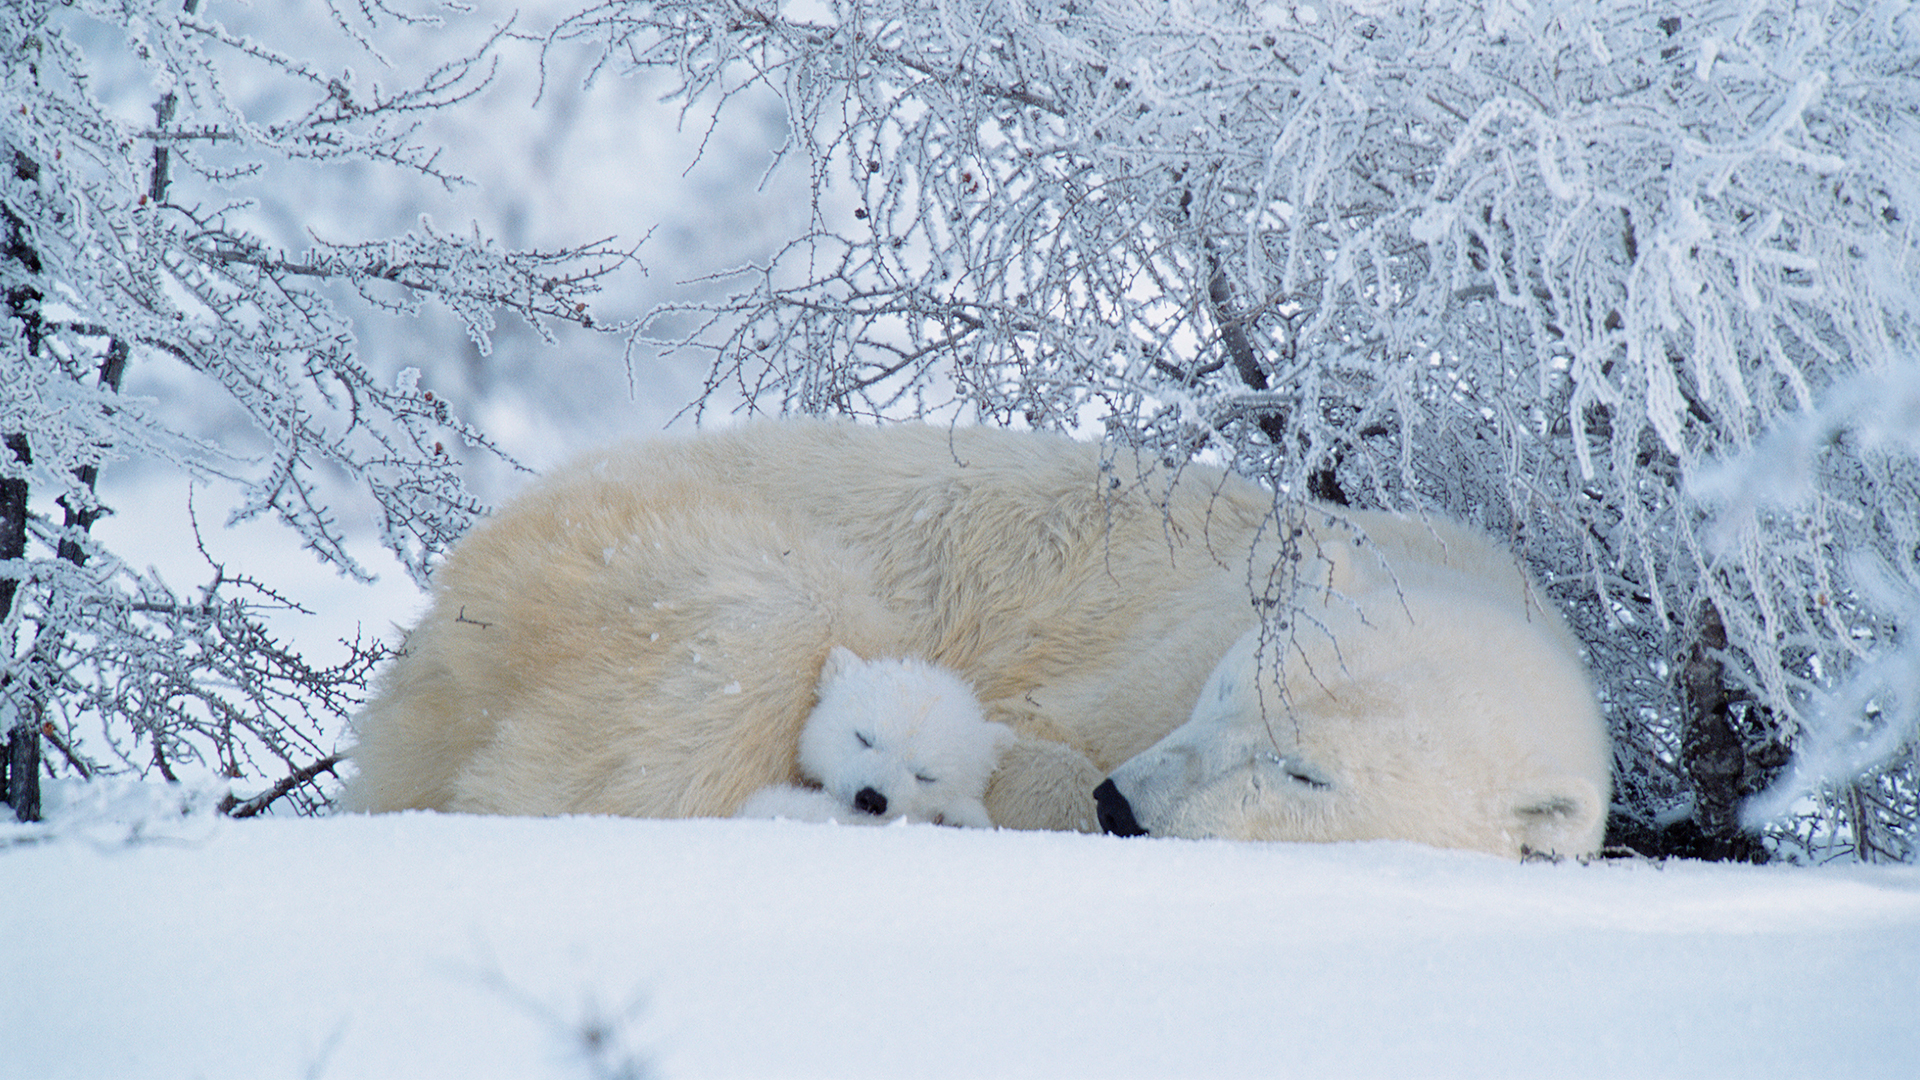 两只北极熊在加拿大睡觉